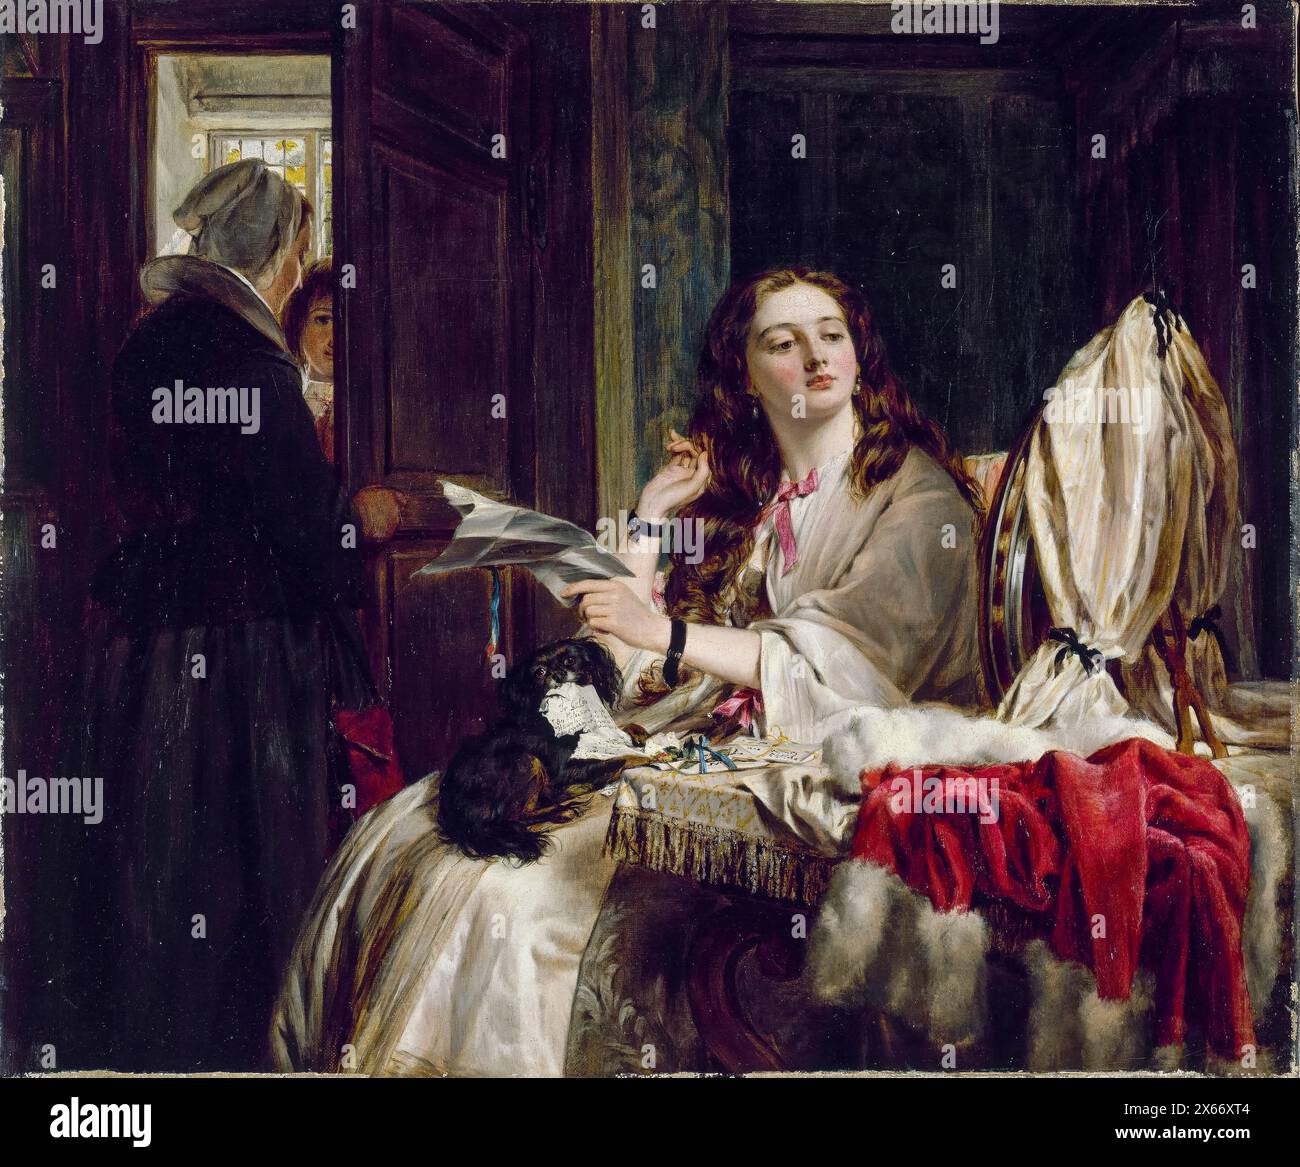 John Callcott Horsley painting, The Morning of St Valentine, oil on canvas, 1865 Stock Photo